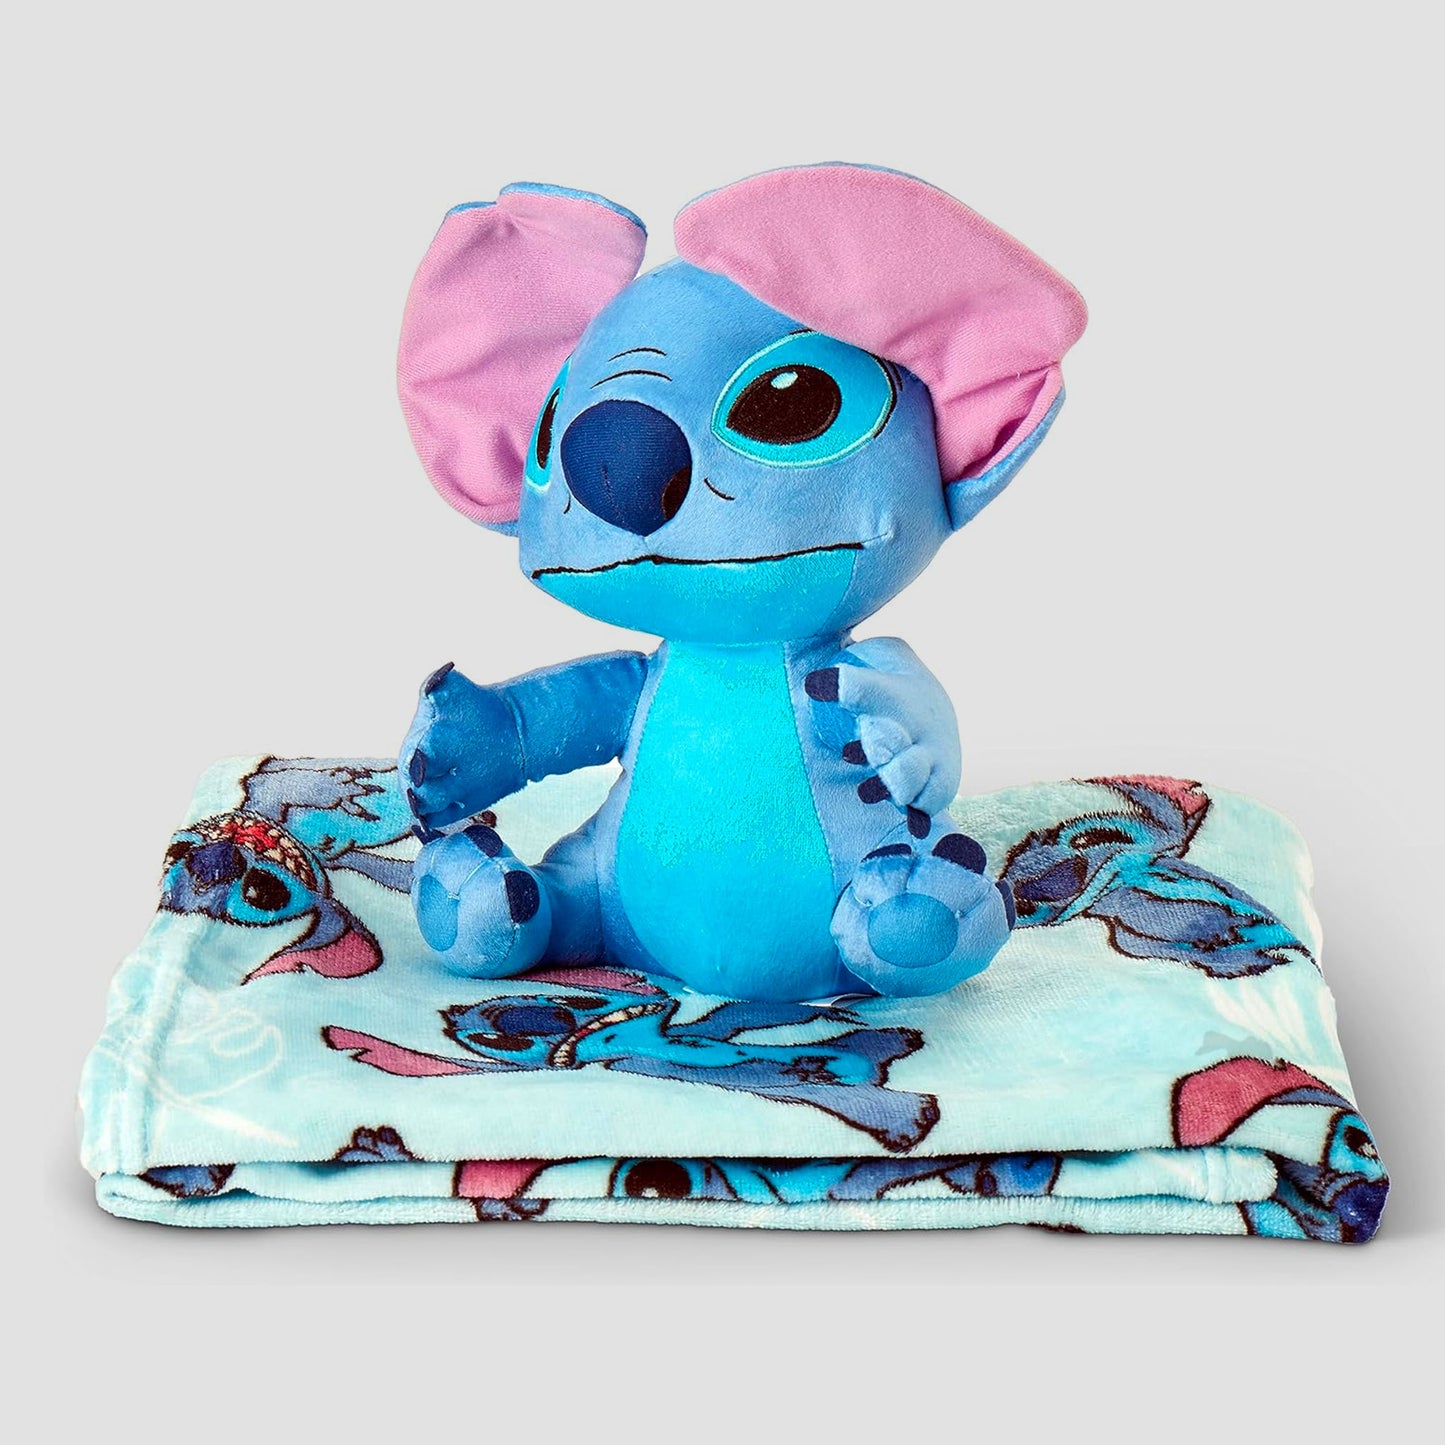 Stitch (Lilo & Stitch) Disney Plush and Throw Blanket